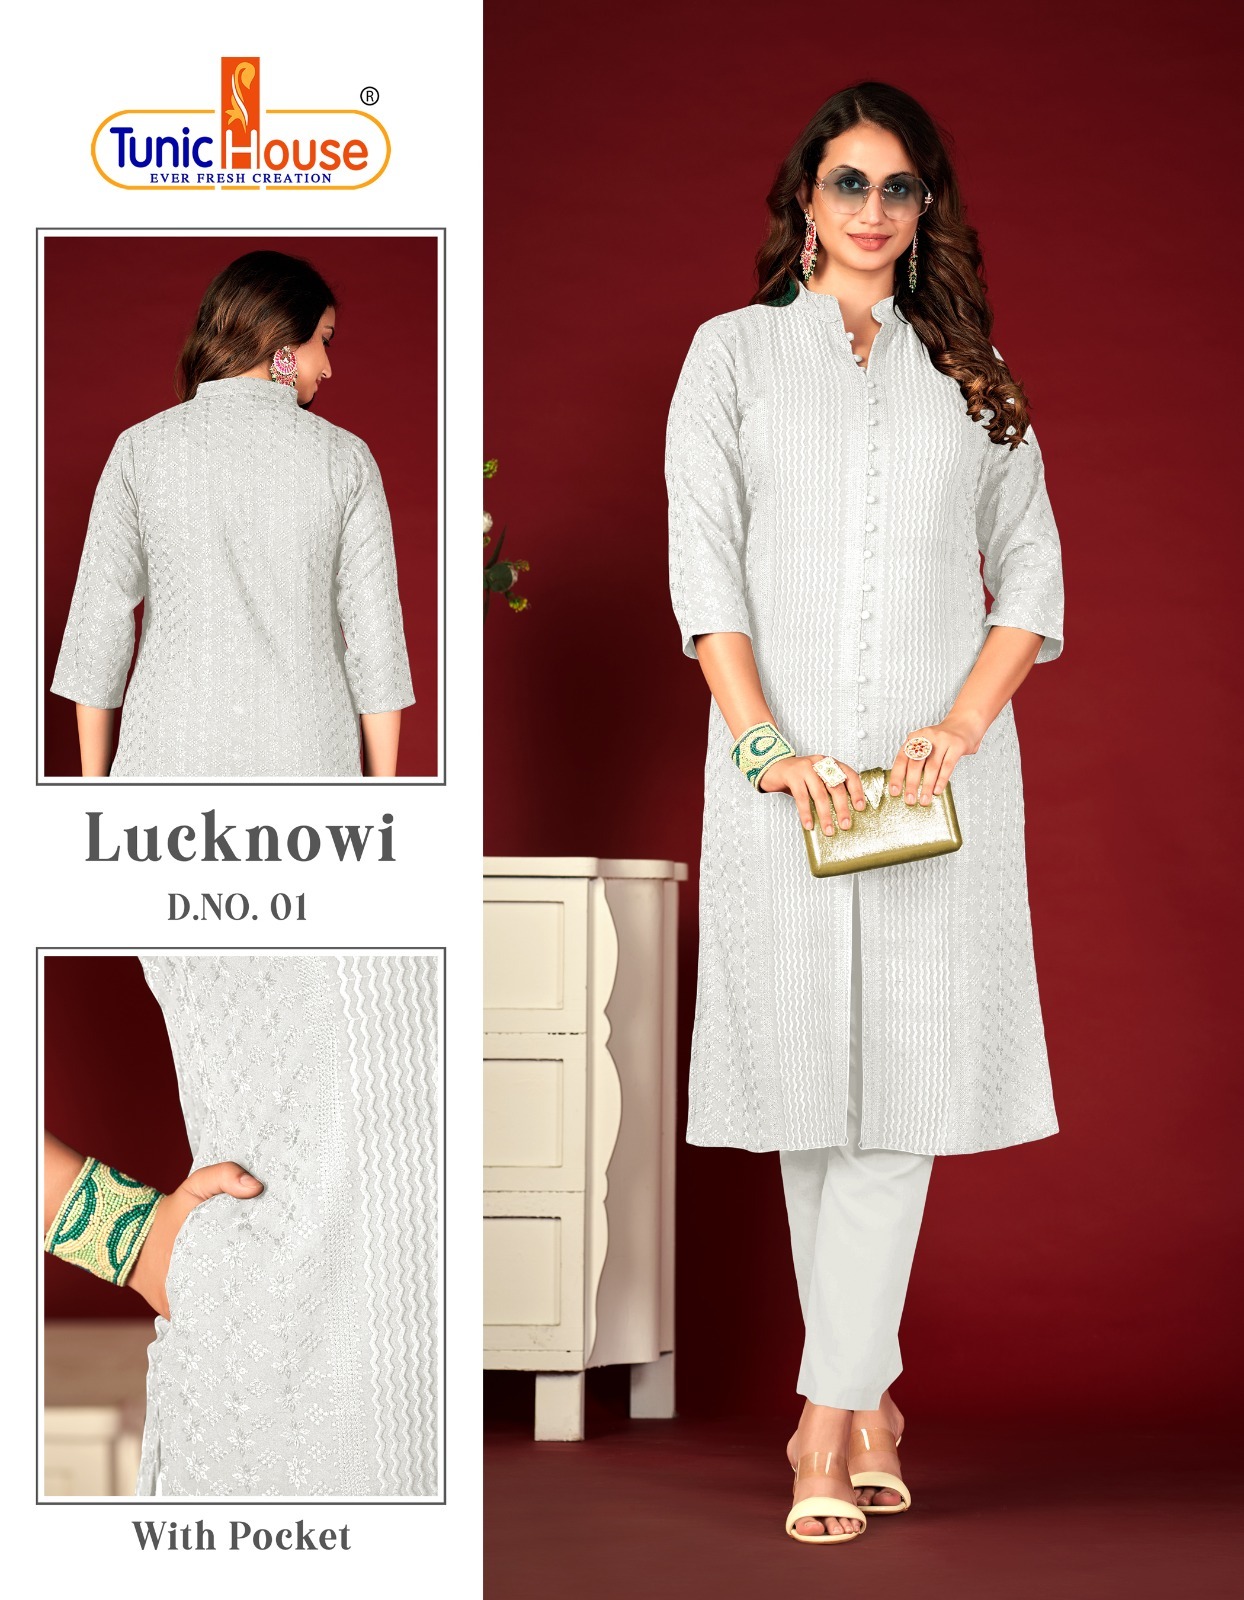 tunic house Lucknowi Lining viscose rayon attrective look kurti size set